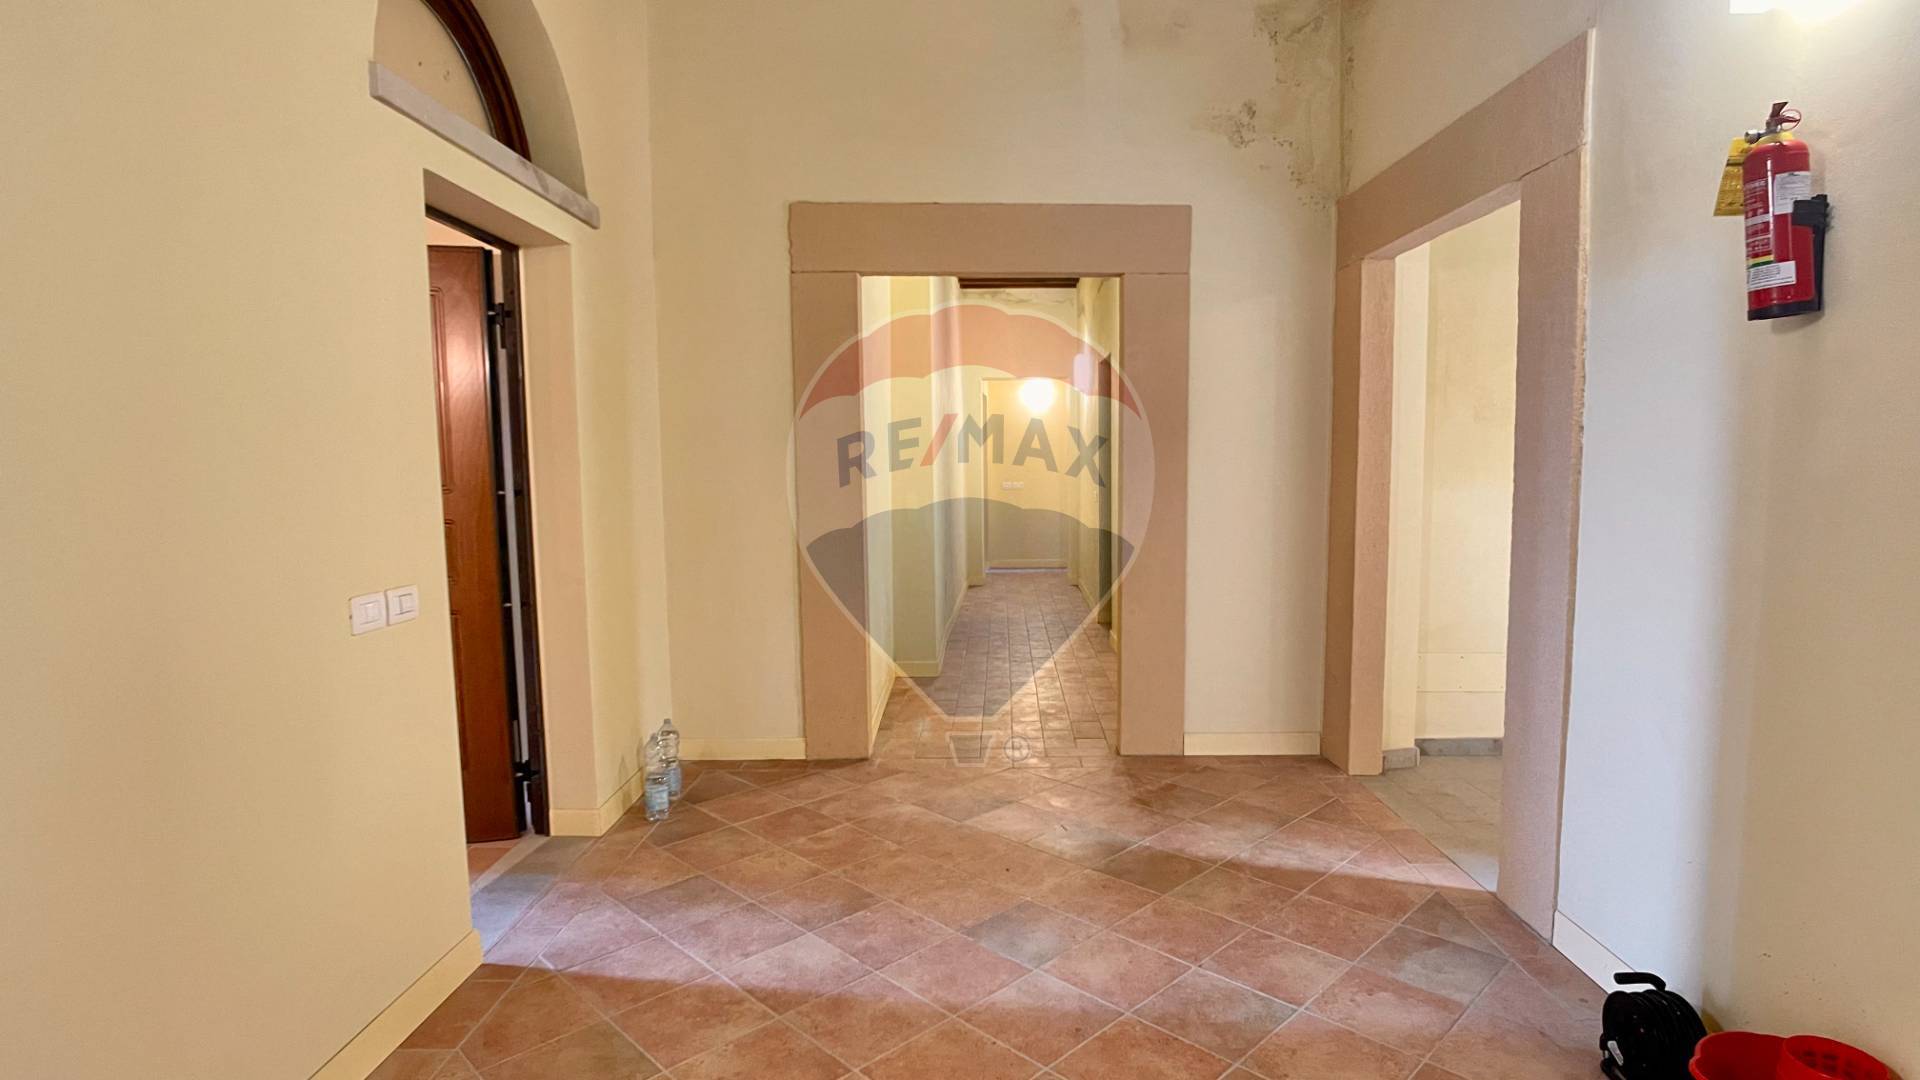 Appartamento in vendita a Casciana Terme Lari, 2 locali, zona Località: CascianaAlta, prezzo € 95.000 | PortaleAgenzieImmobiliari.it